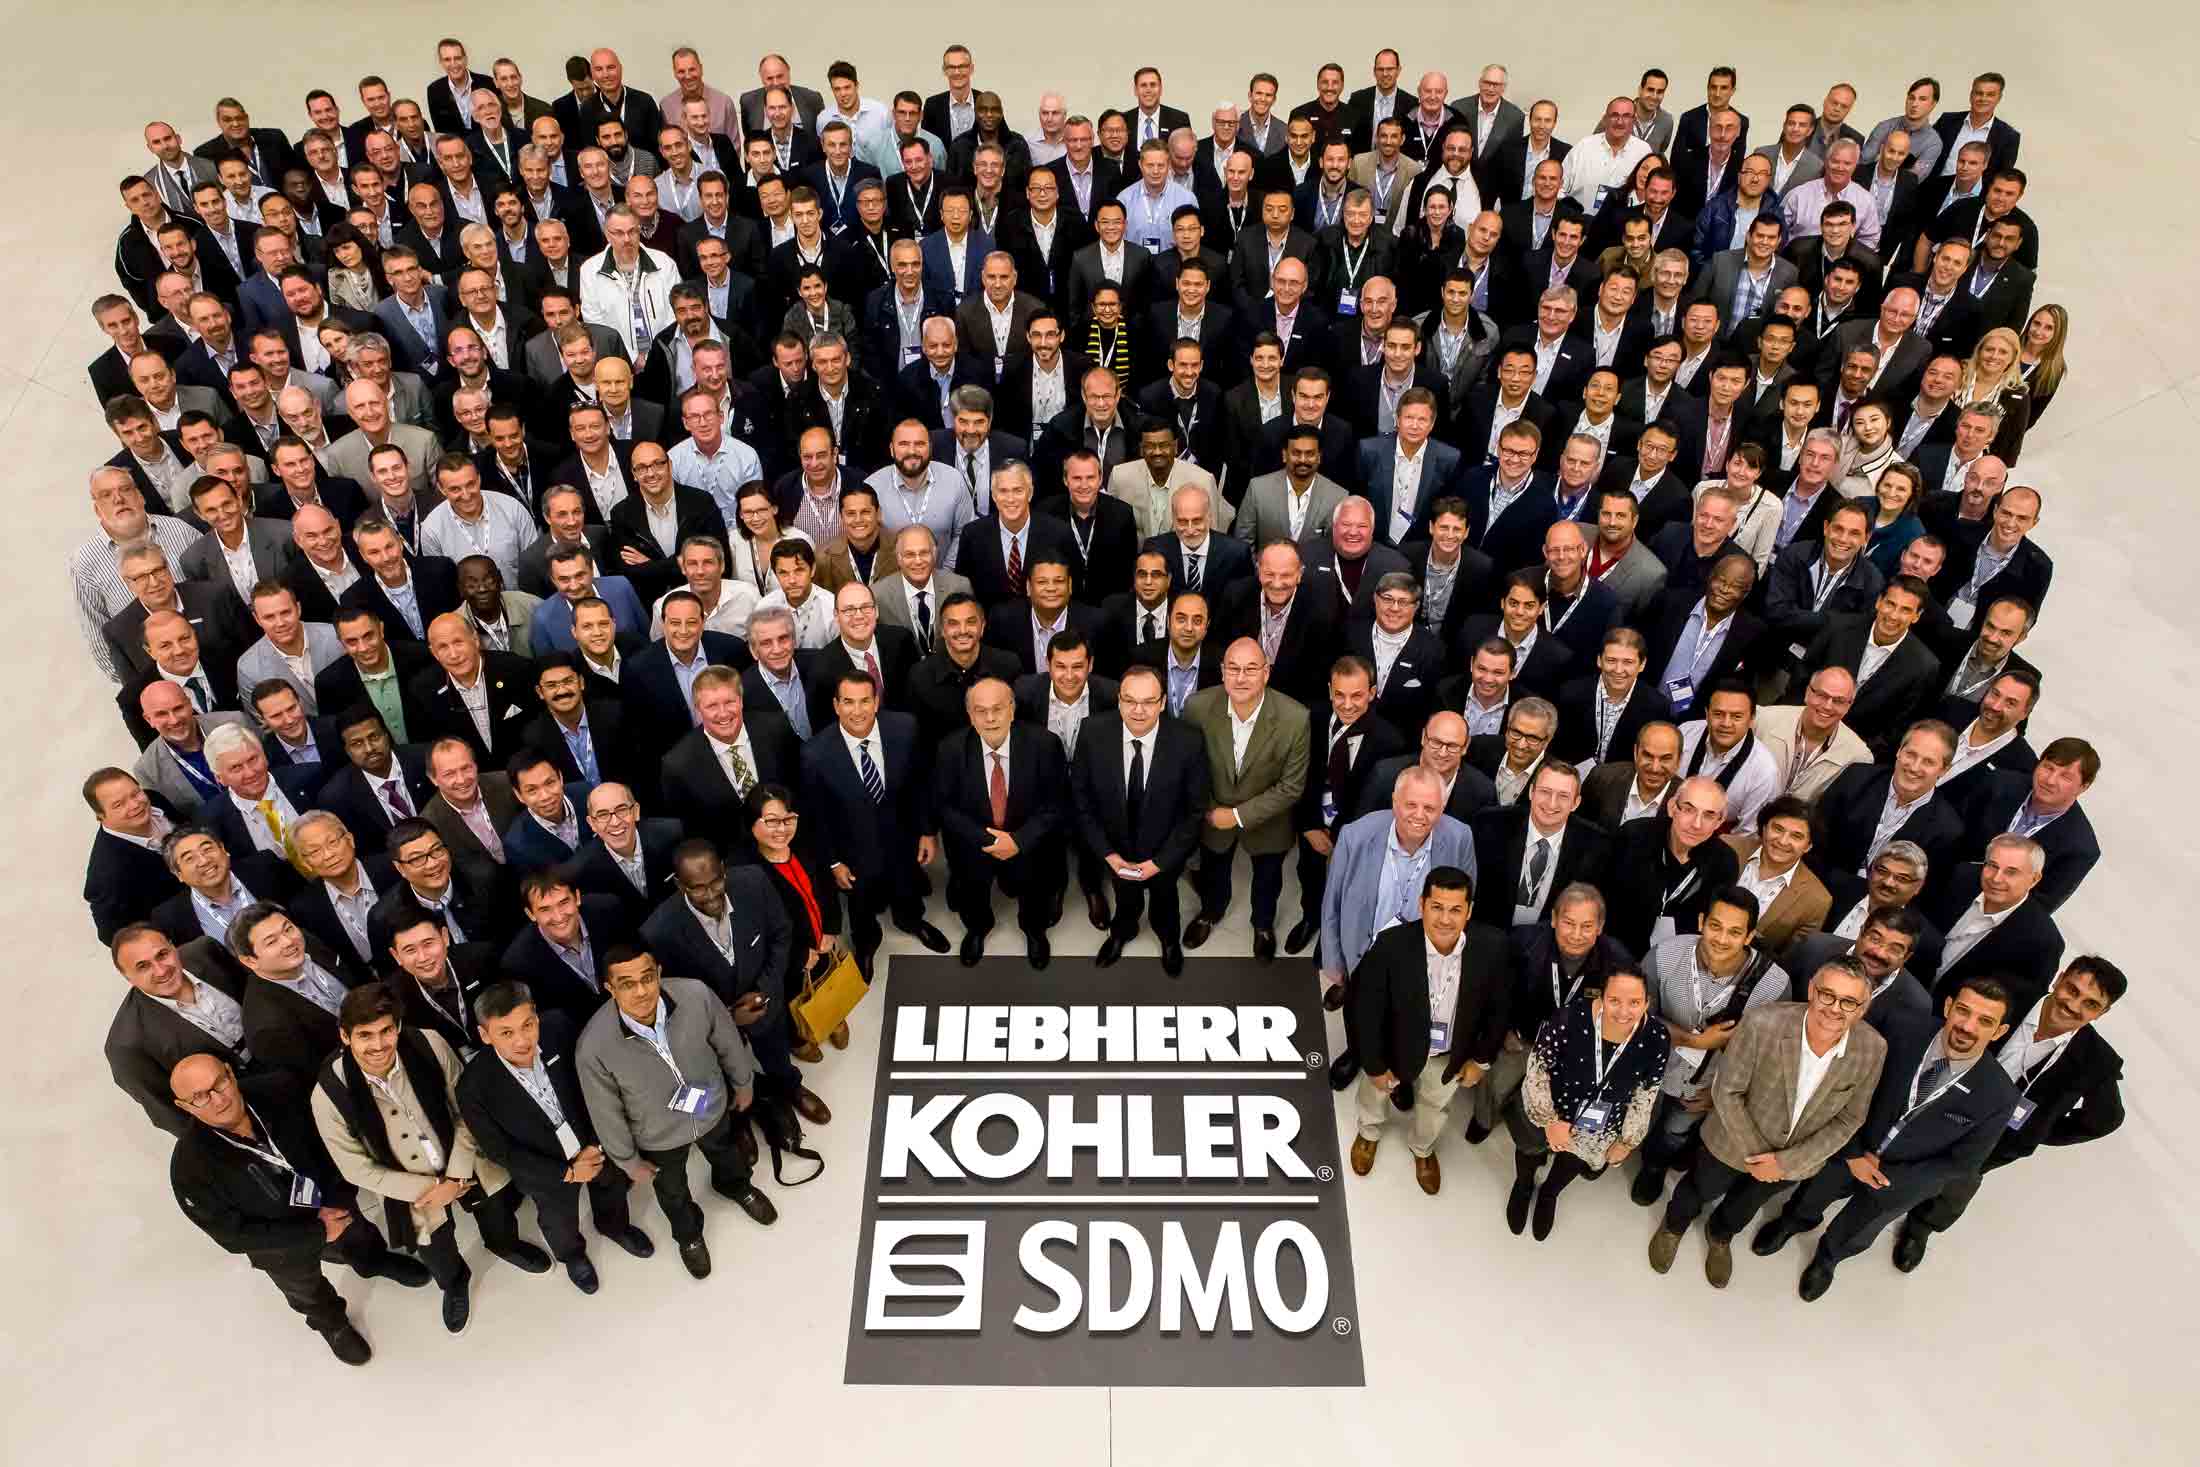 Liebherr / Kohler / SDMO - Photo d'entreprise - Groupe de 300 personnes